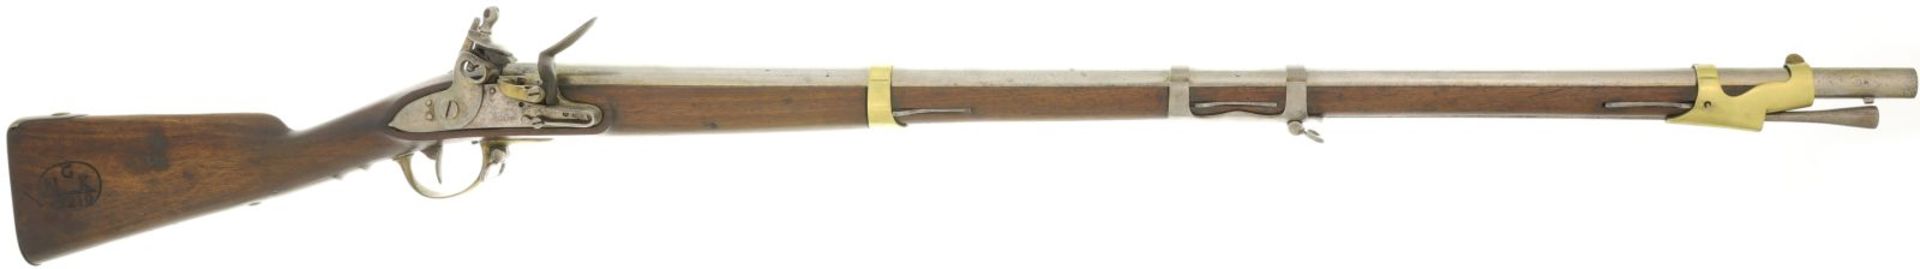 Steinschlossgewehr, franz. Mod. an 9, Manufacture Imperial de St. Etienne, Kal. 17.6mm@ LL 980mm, TL